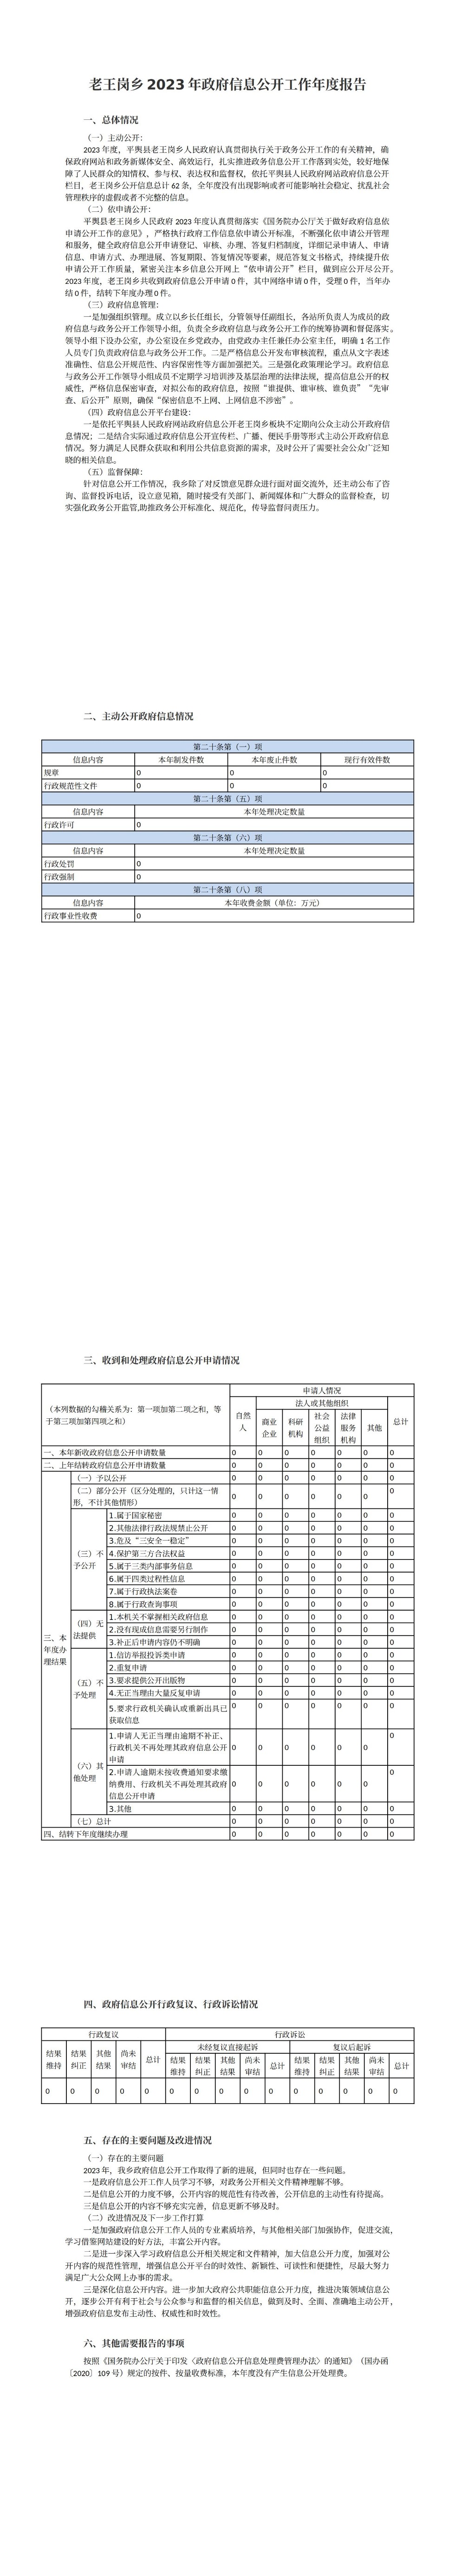 老王岗乡2023年政府信息公开工作年度报告_00.jpg